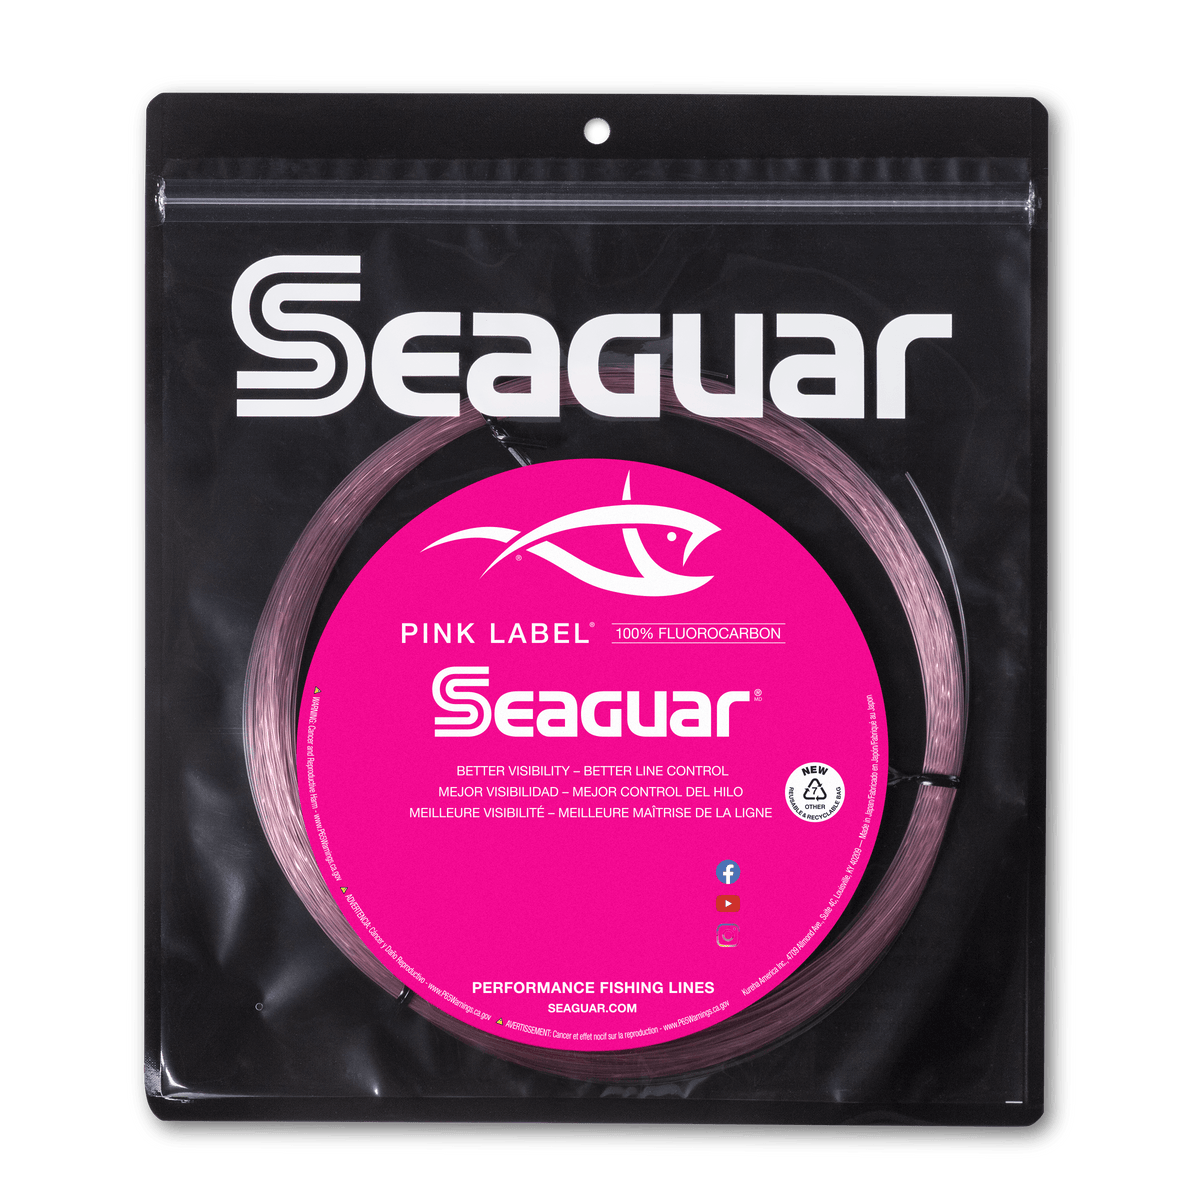 Seaguar Red Label Fluorocarbon 100% Japan Original Shock Leader